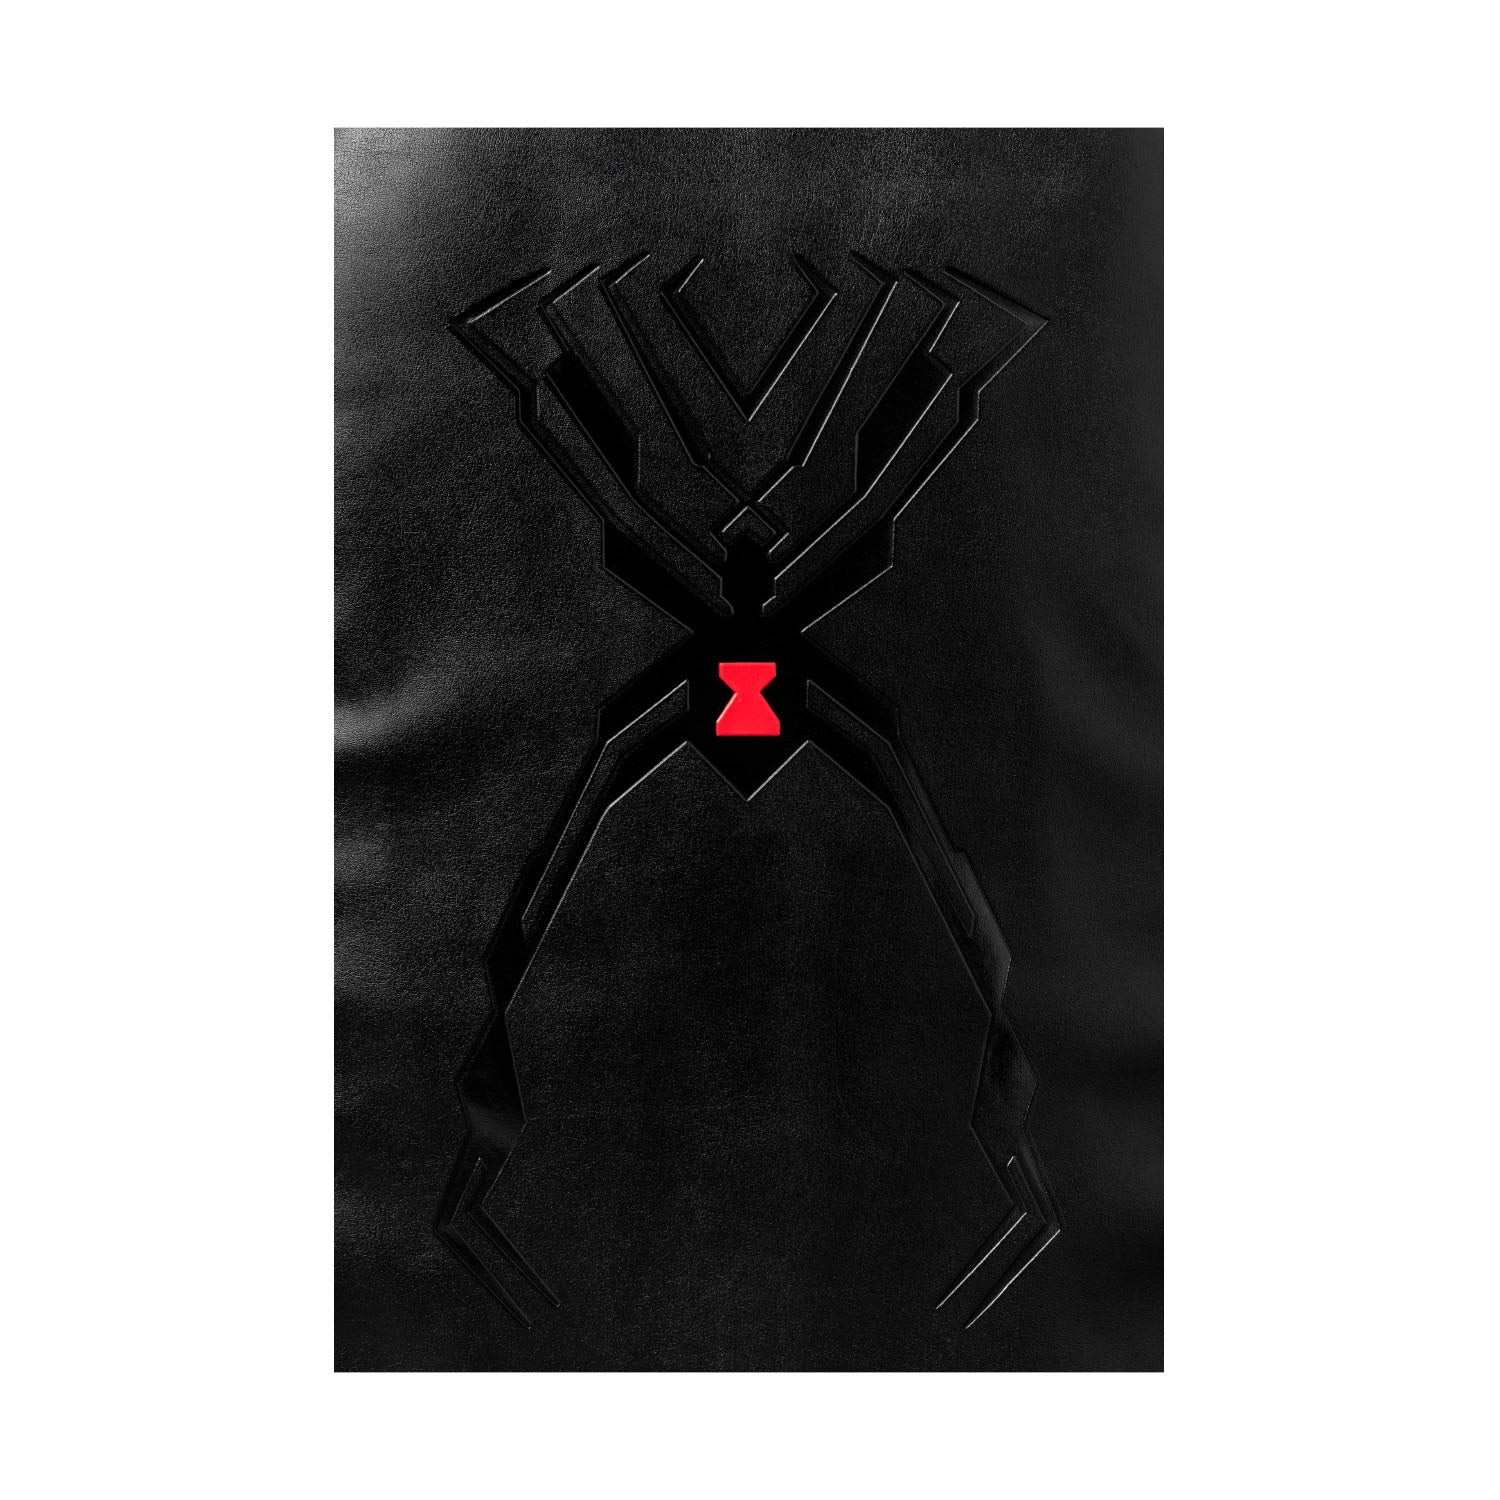 Overwatch Widowmaker Black Backpack - Zoom Logo View